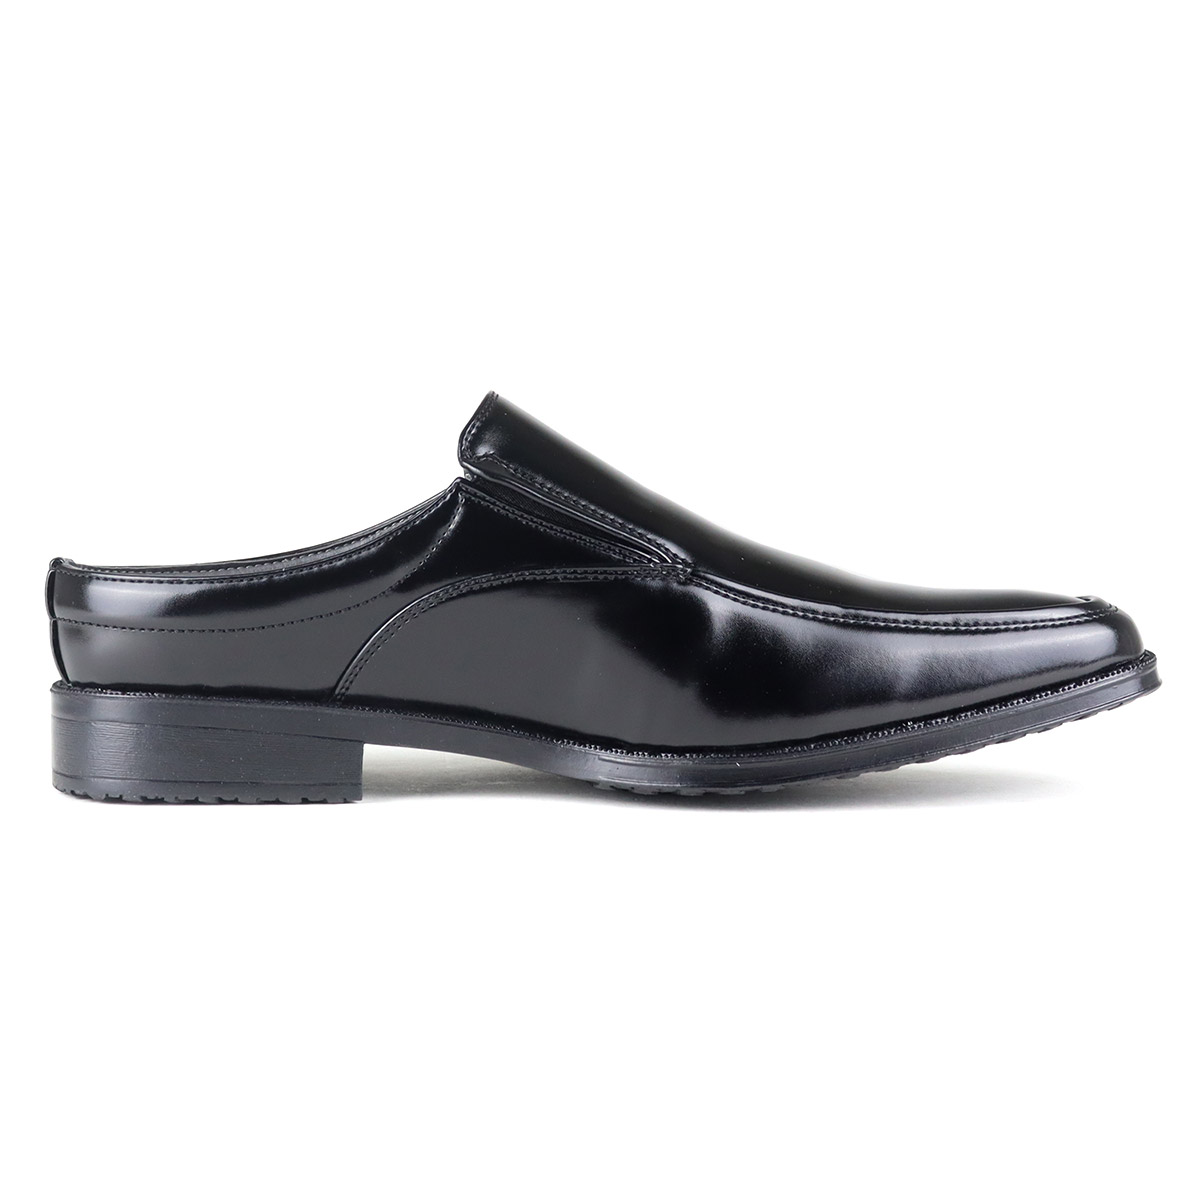 ビジネスサンダル メンズ スリッポン Uチップ 滑りにくい 防滑 スリッパ ビジネスシューズ 革靴 紳士靴 PUレザー ロングノーズ 3cmヒール  No.2693 25.0cm〜28.5cm 黒 ブラック AAA+ サンエープラス 父の日 | Zeal Market